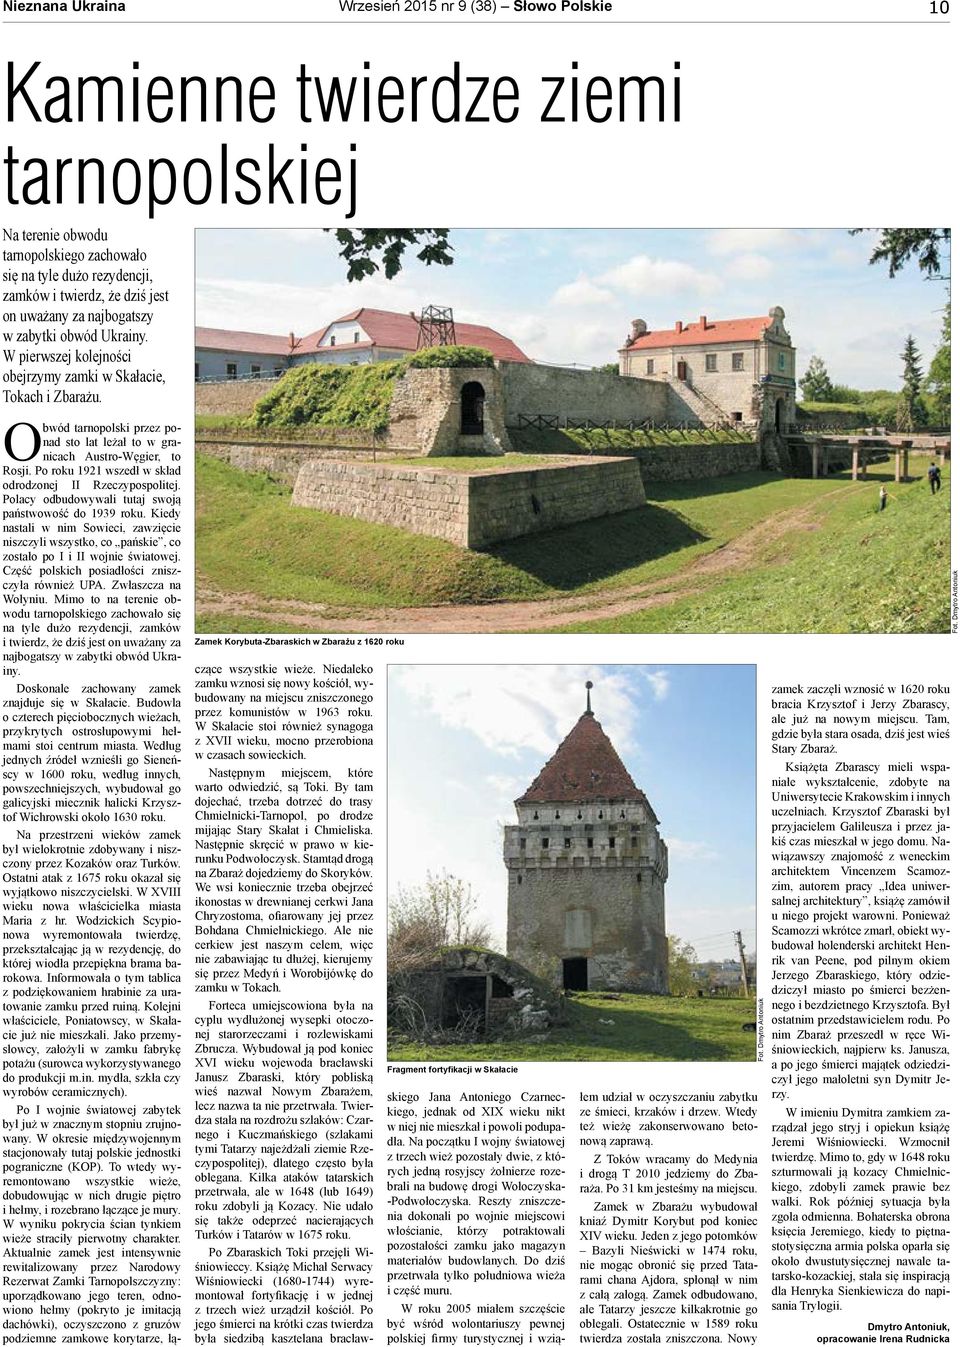 Zamek Korybuta-Zbaraskich w Zbarażu z 1620 roku Fragment fortyfikacji w Skałacie skiego Jana Antoniego Czarneckiego, jednak od XIX wieku nikt w niej nie mieszkał i powoli podupadła.